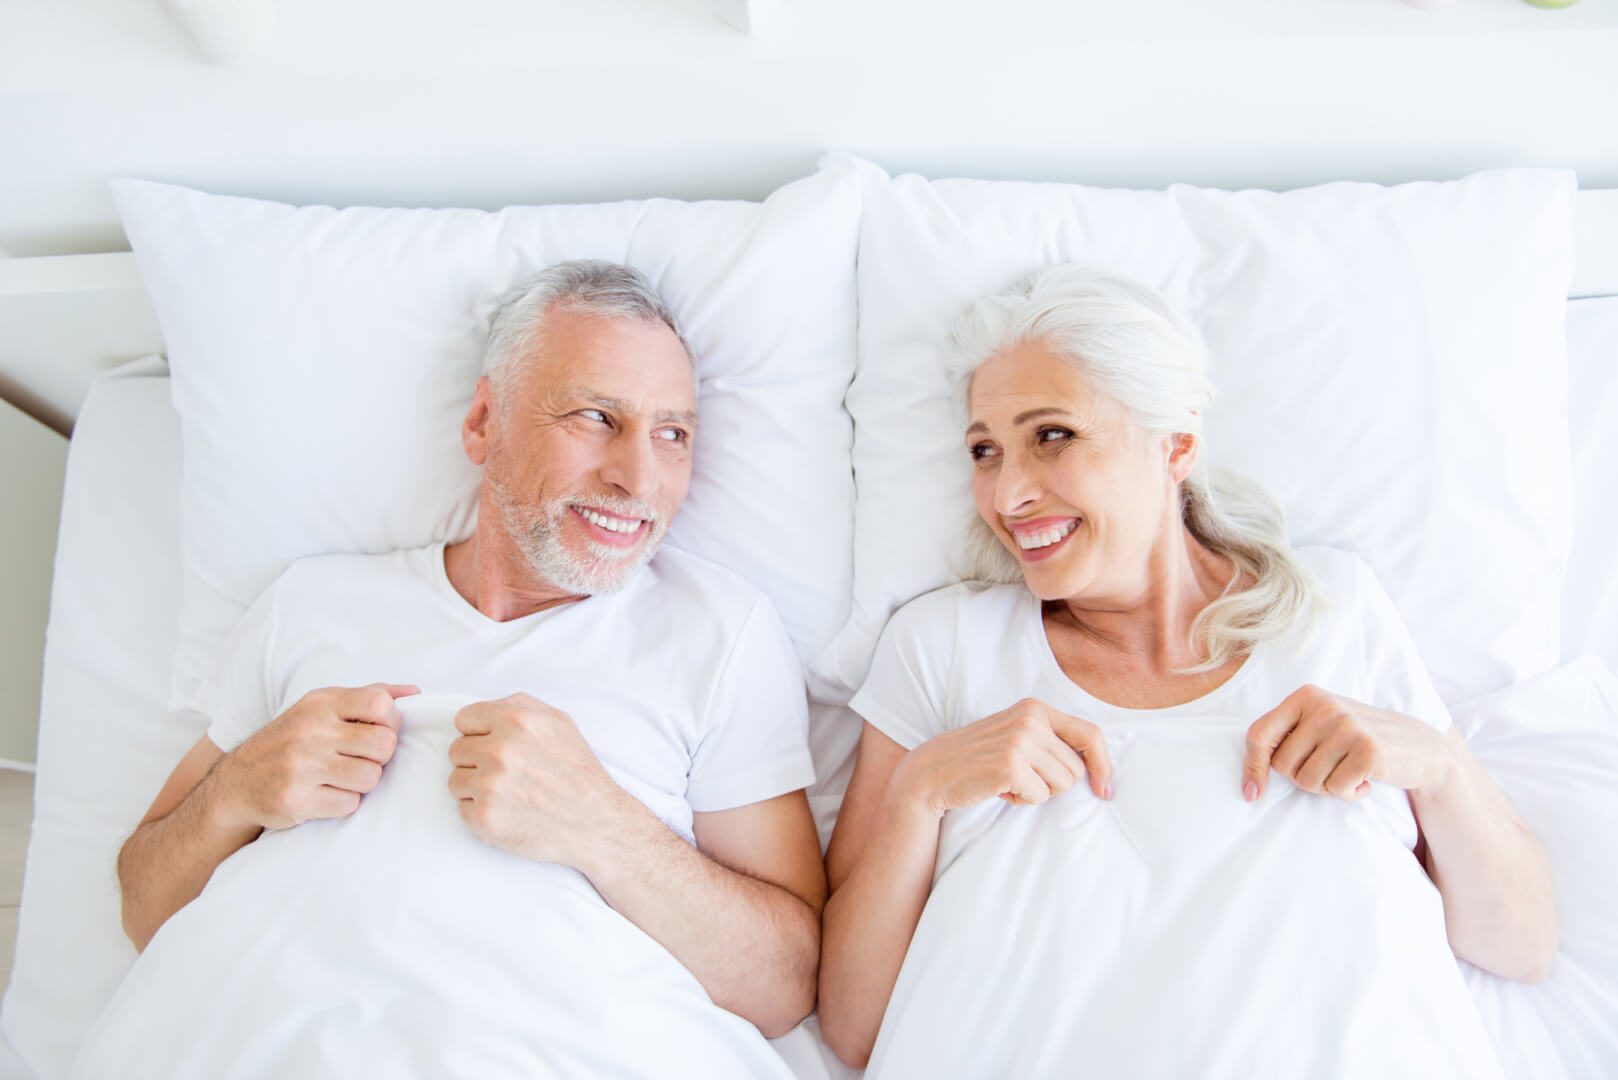 En la imagen se muestra a dos personas mayores, un matrimonio de un varón y una mujer en la cama mirándose y sonriéndose. Hacer el amor a partir de los 60 tiene múltiples beneficios emocionales. 